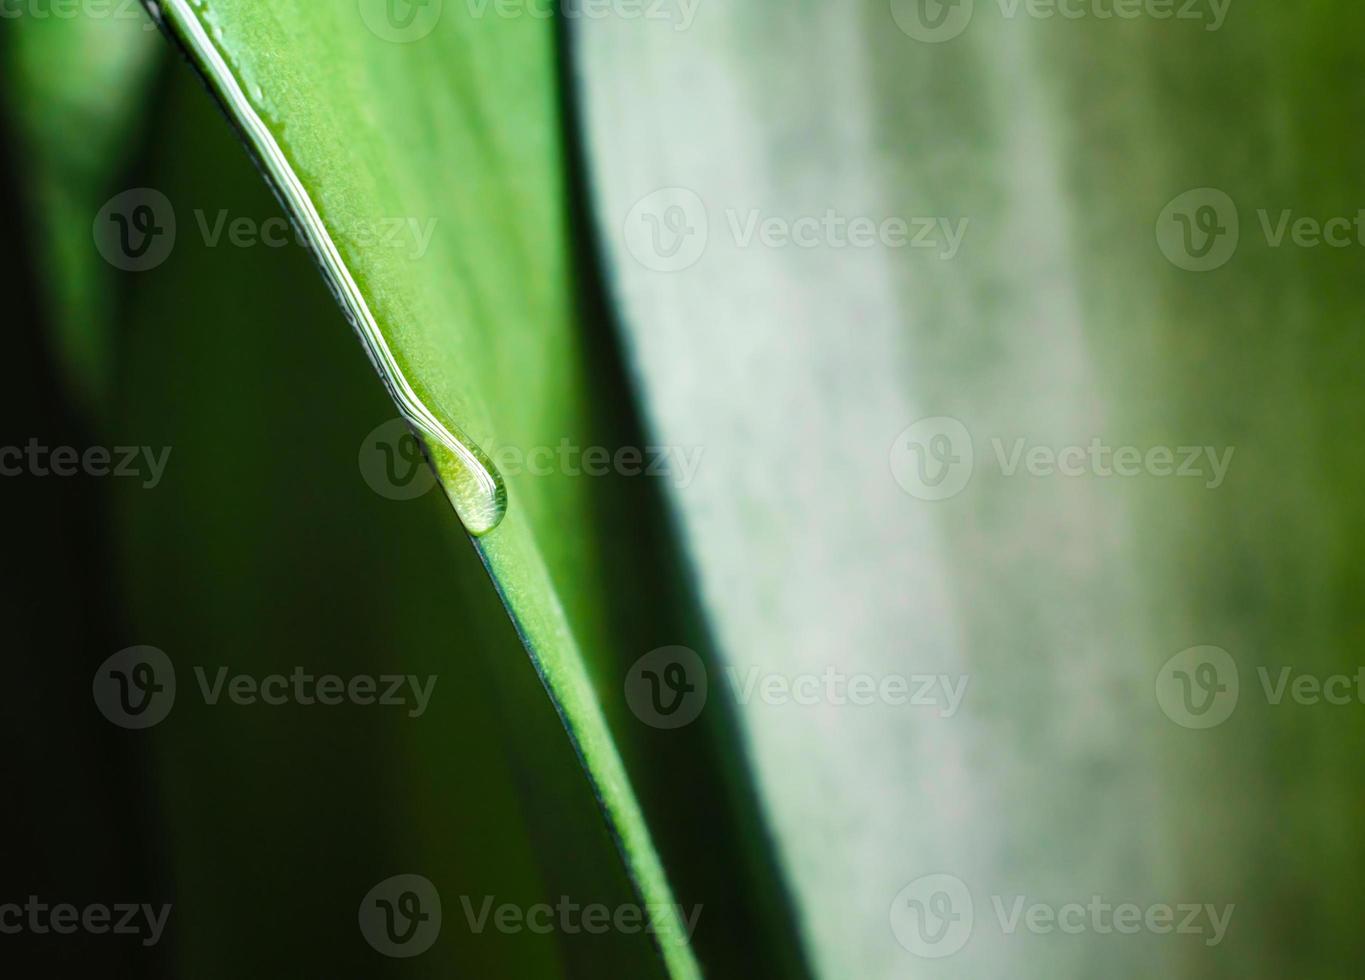 druppel dauw op een vers groen blad van een plant, macro voorjaar achtergrond close-up foto